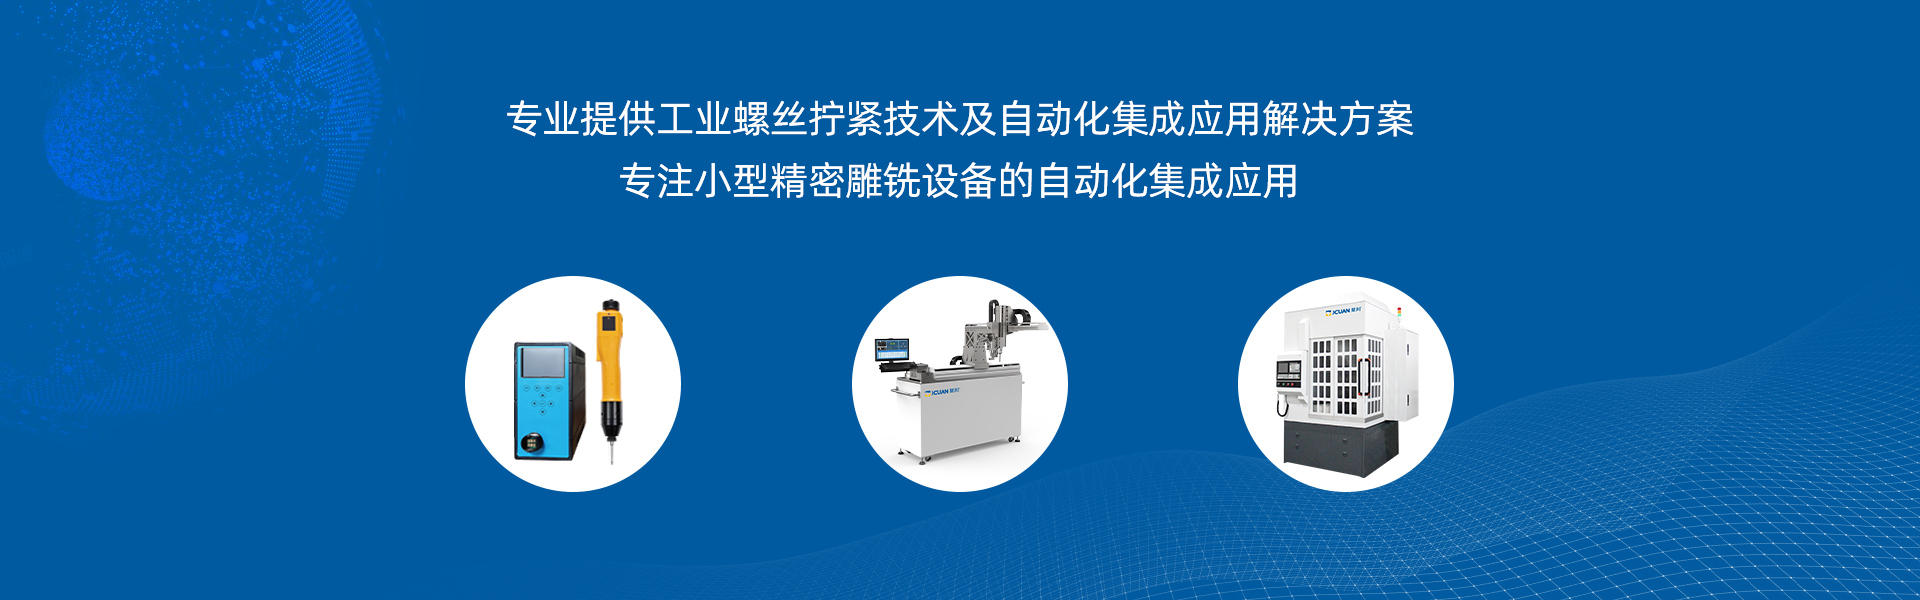 东莞聚川为客户量身打造打印机装配项目拧紧机台